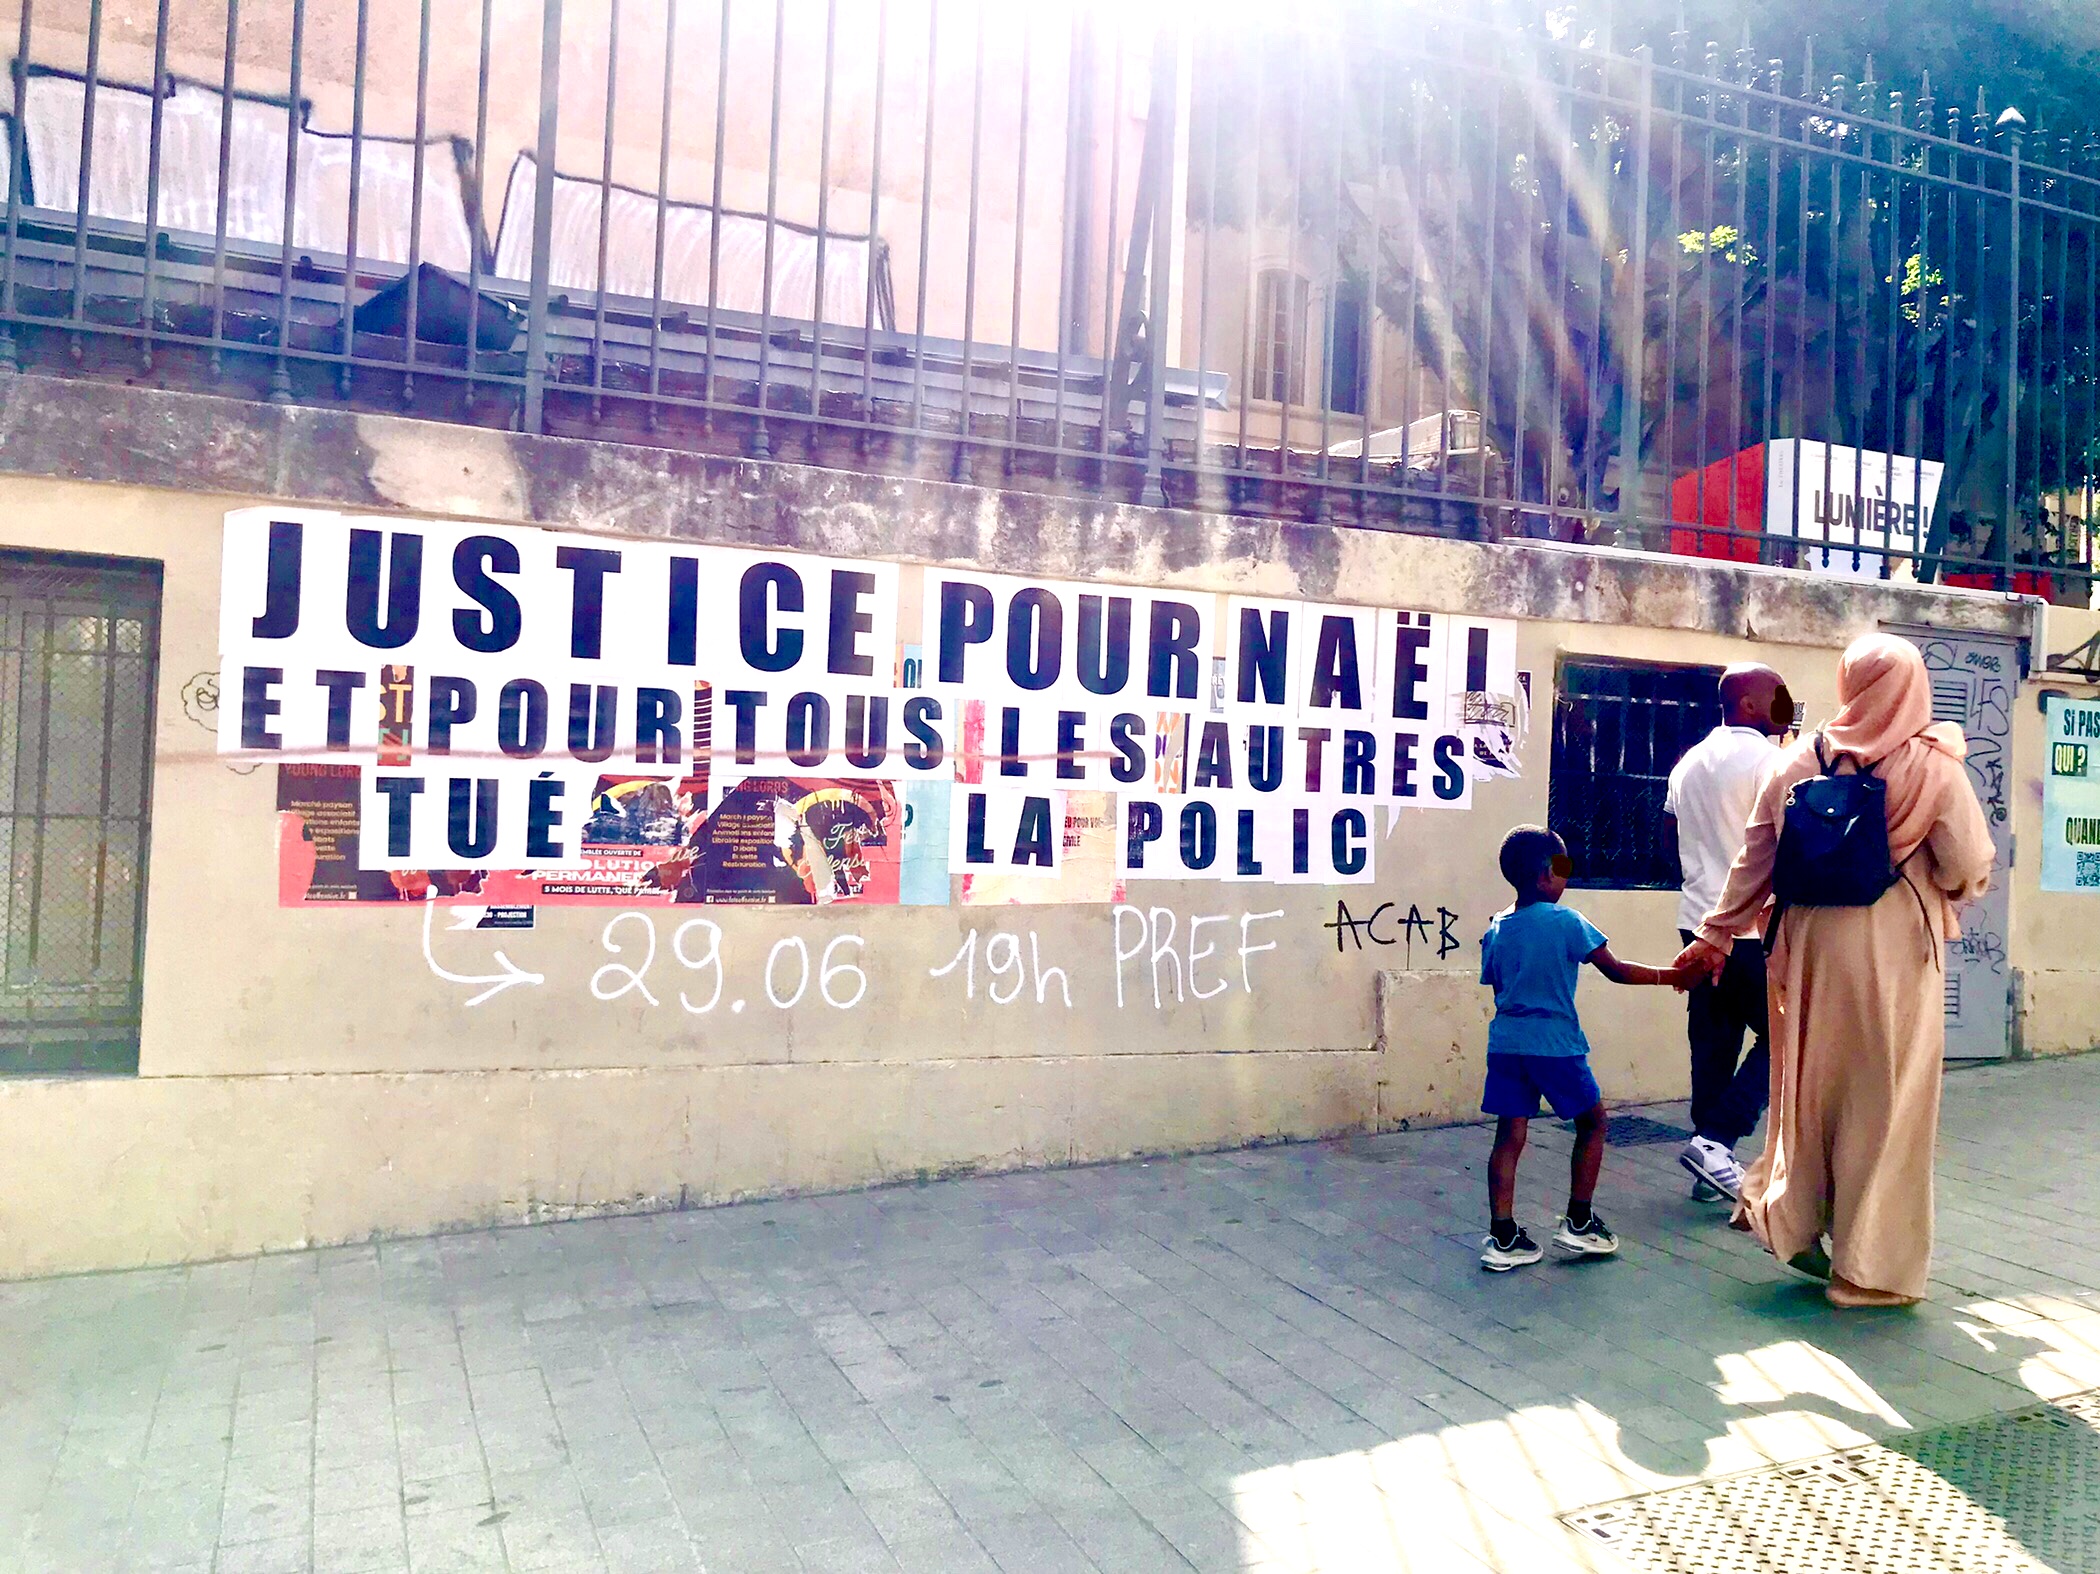 Proteste gegen Polizeigewalt in Marseille